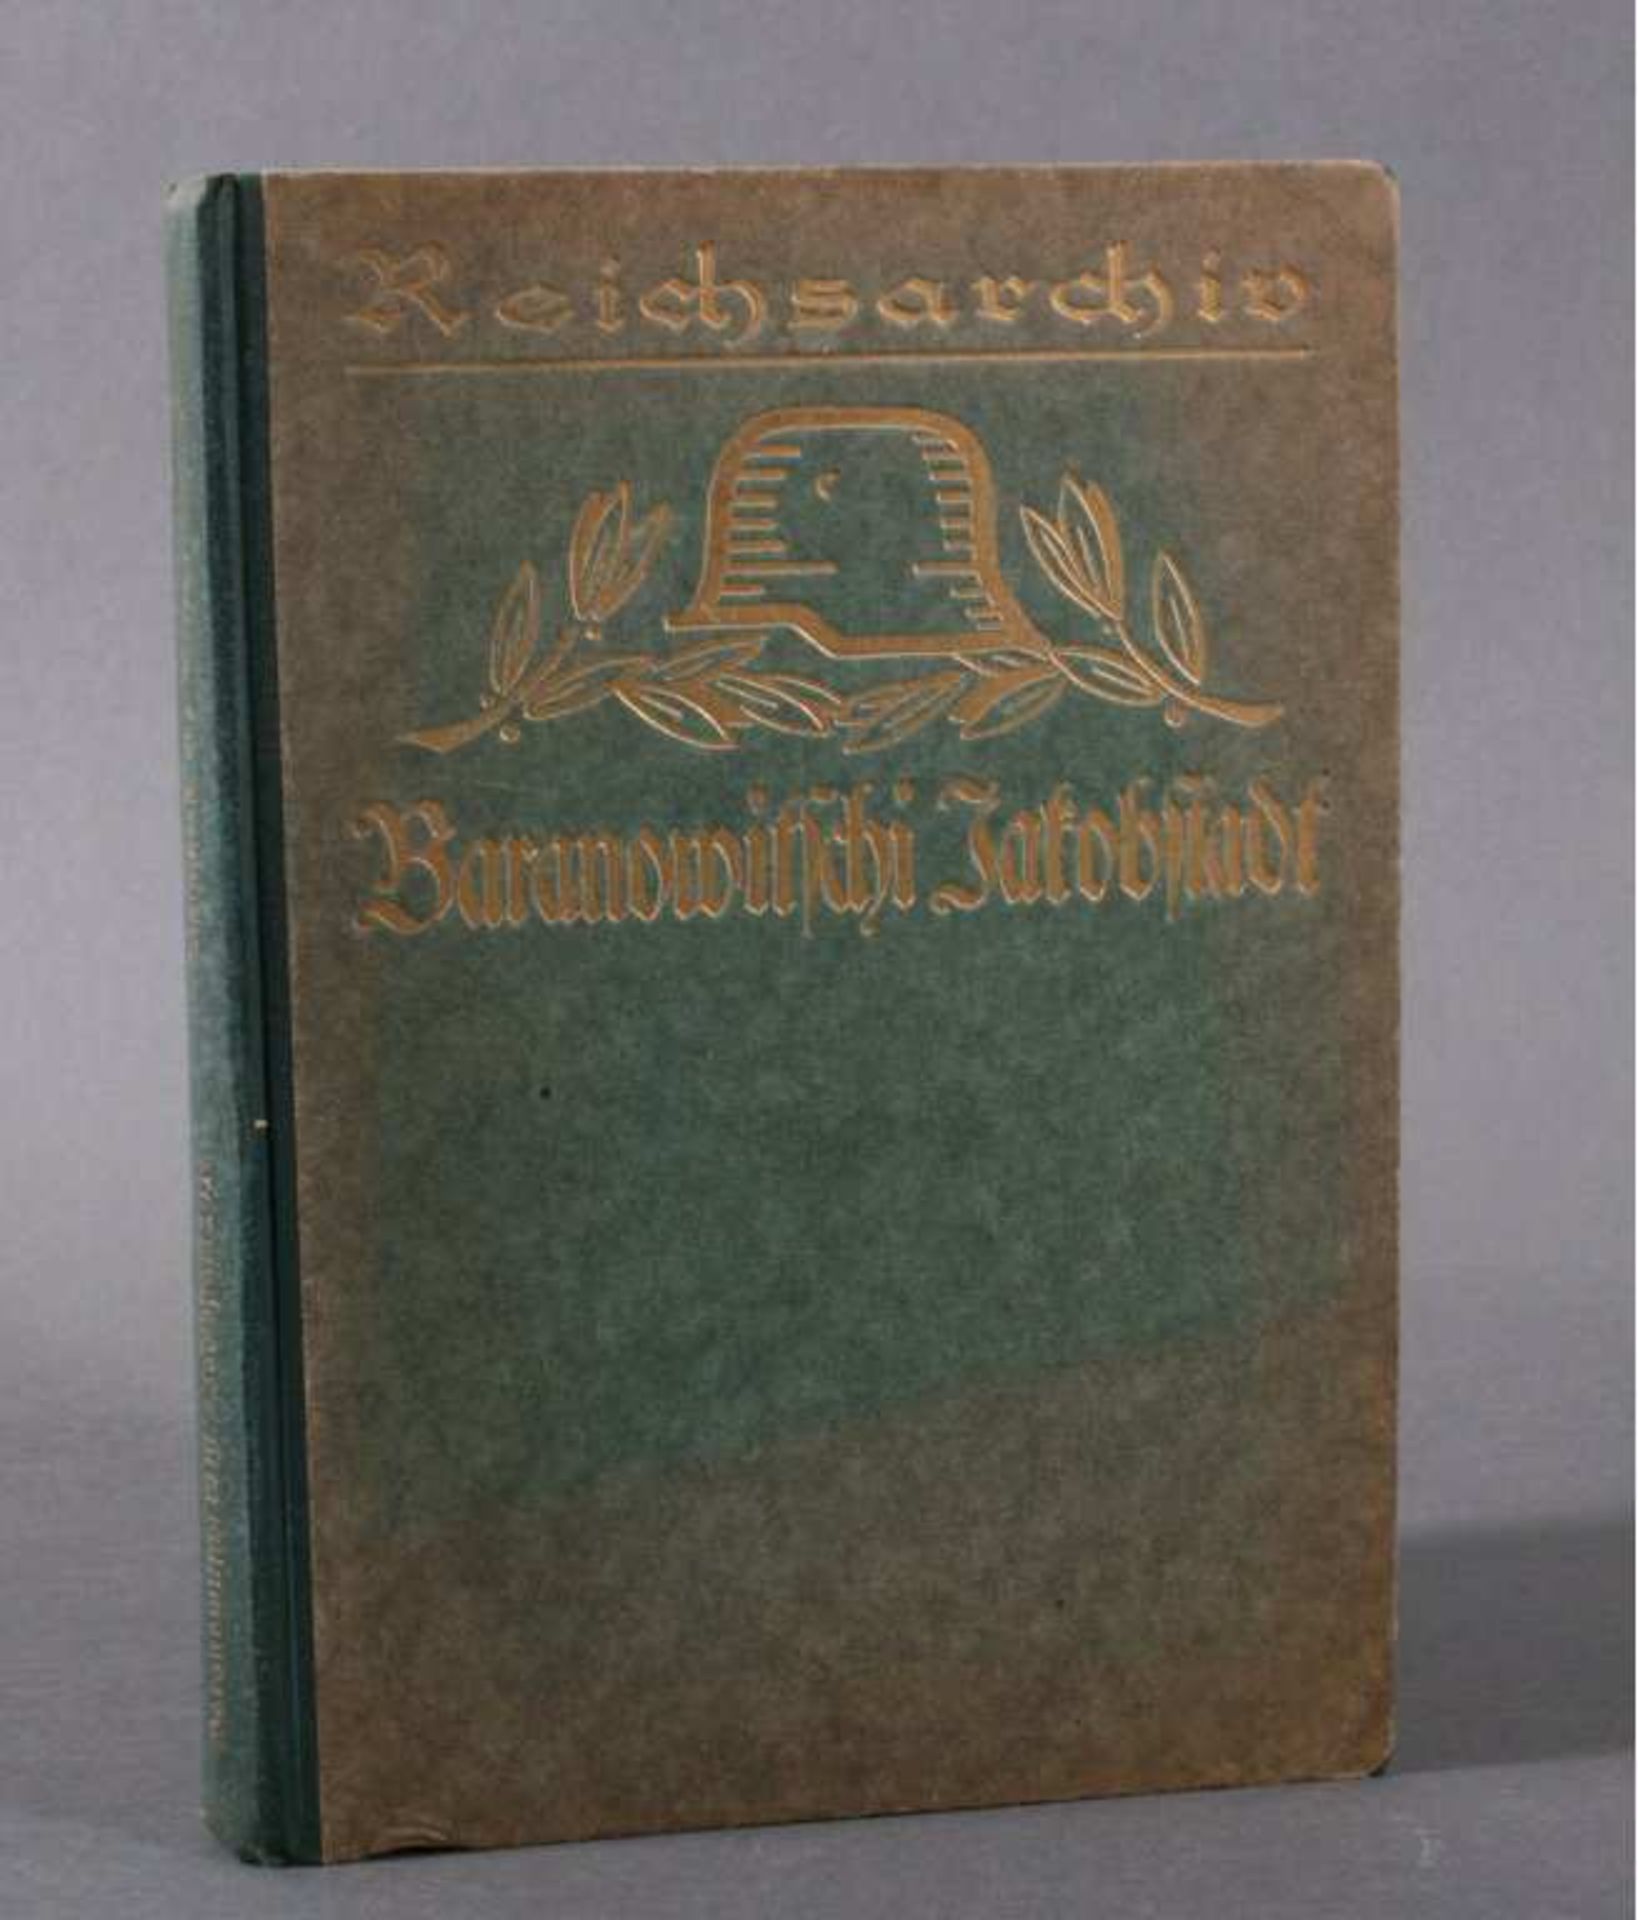 Die Kämpfe um Baranowitschi Sommer 1916Schlachten des Weltkrieges hrsg. unter Mitwirkung